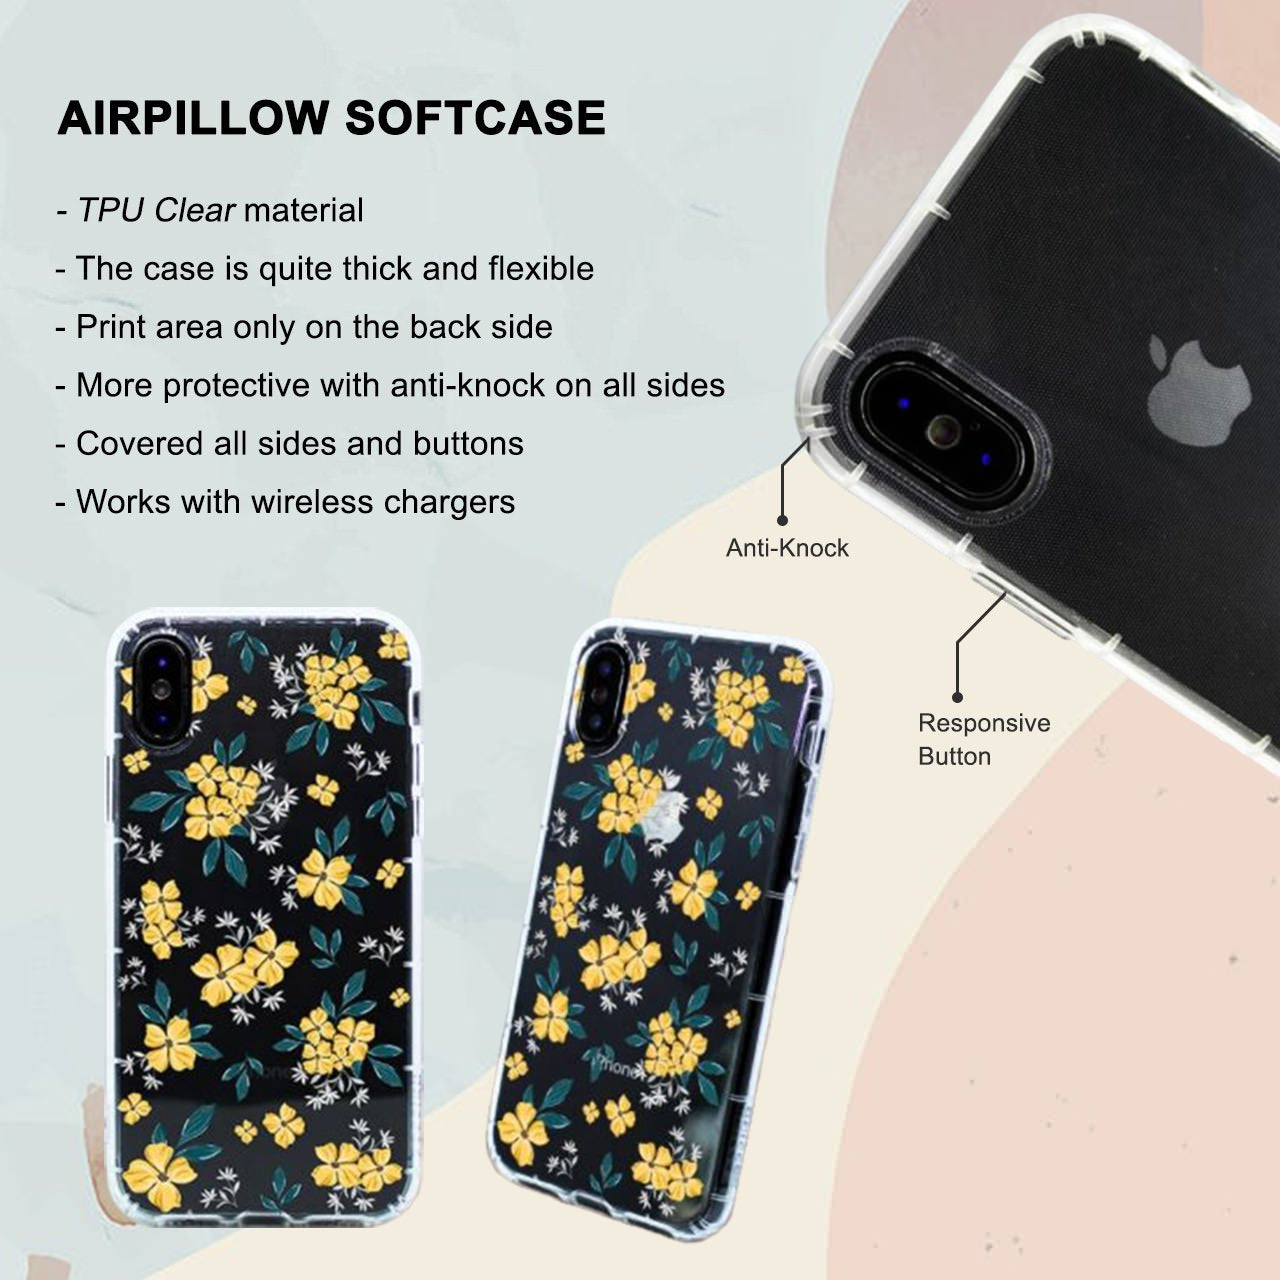 Aquamarine Revenge iPhone 6/6S Case